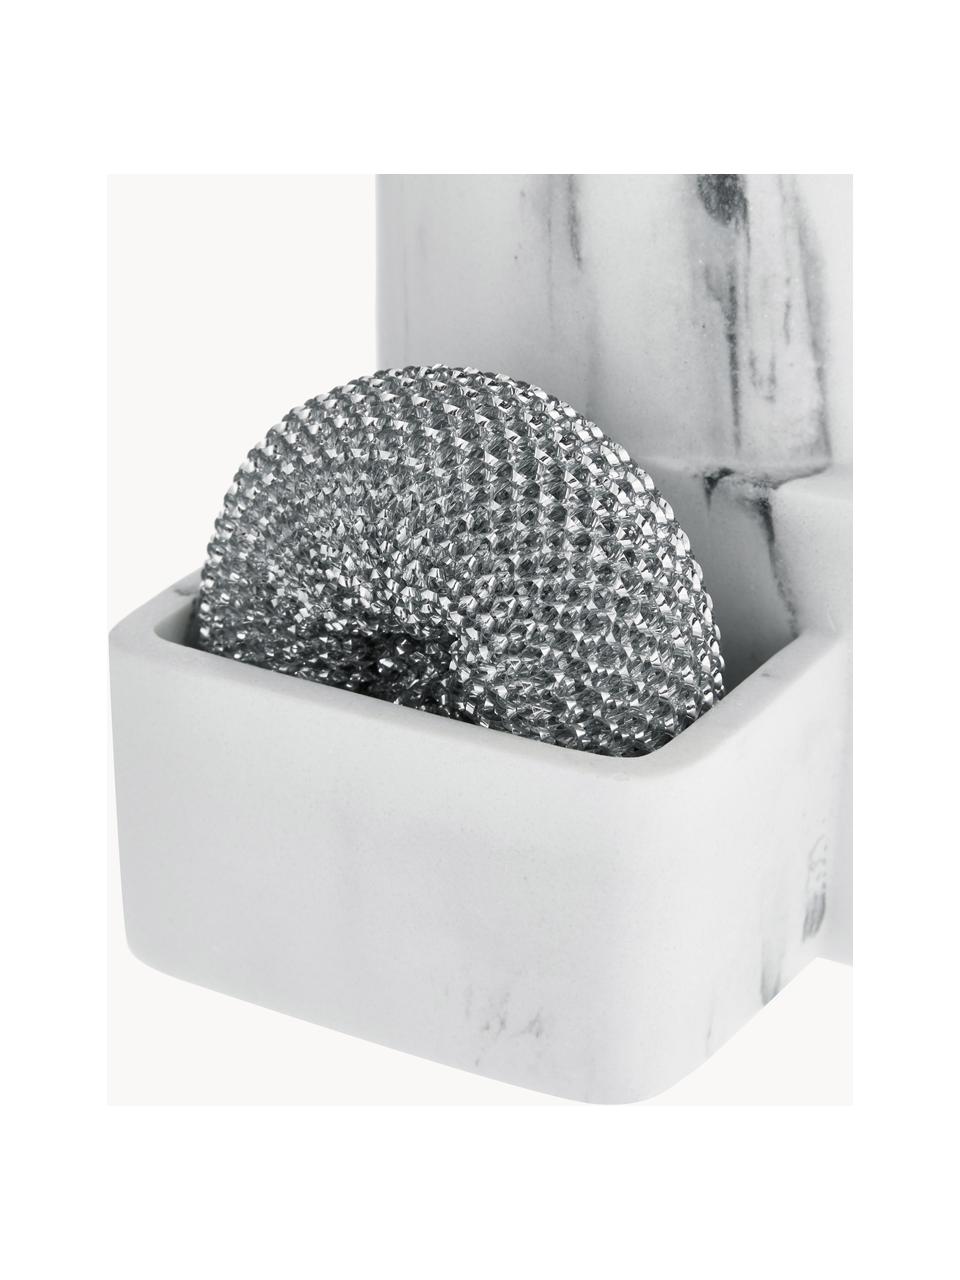 Seifenspender Galia, 3er-Set, Metallschwamm: Metall, Weiss, marmoriert, Silberfarben, B 13 x H 24 cm